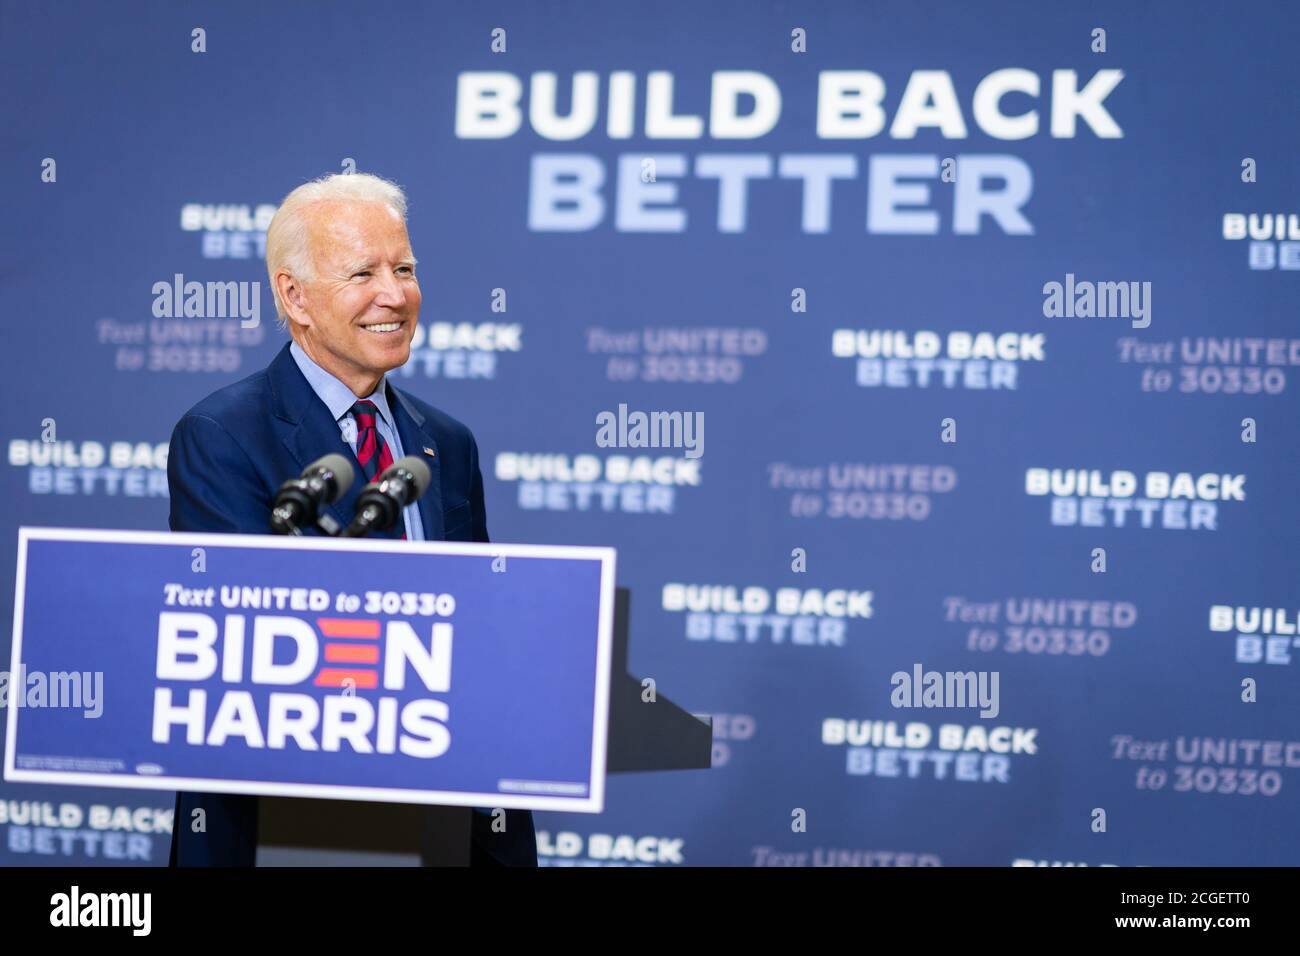 WILMINGTON, PA, EE.UU. - 04 de septiembre de 2020 - el candidato presidencial demócrata de EE.UU. Joe Biden en una conferencia de prensa sobre "el estado de la economía de EE.UU. Annd Job Foto de stock